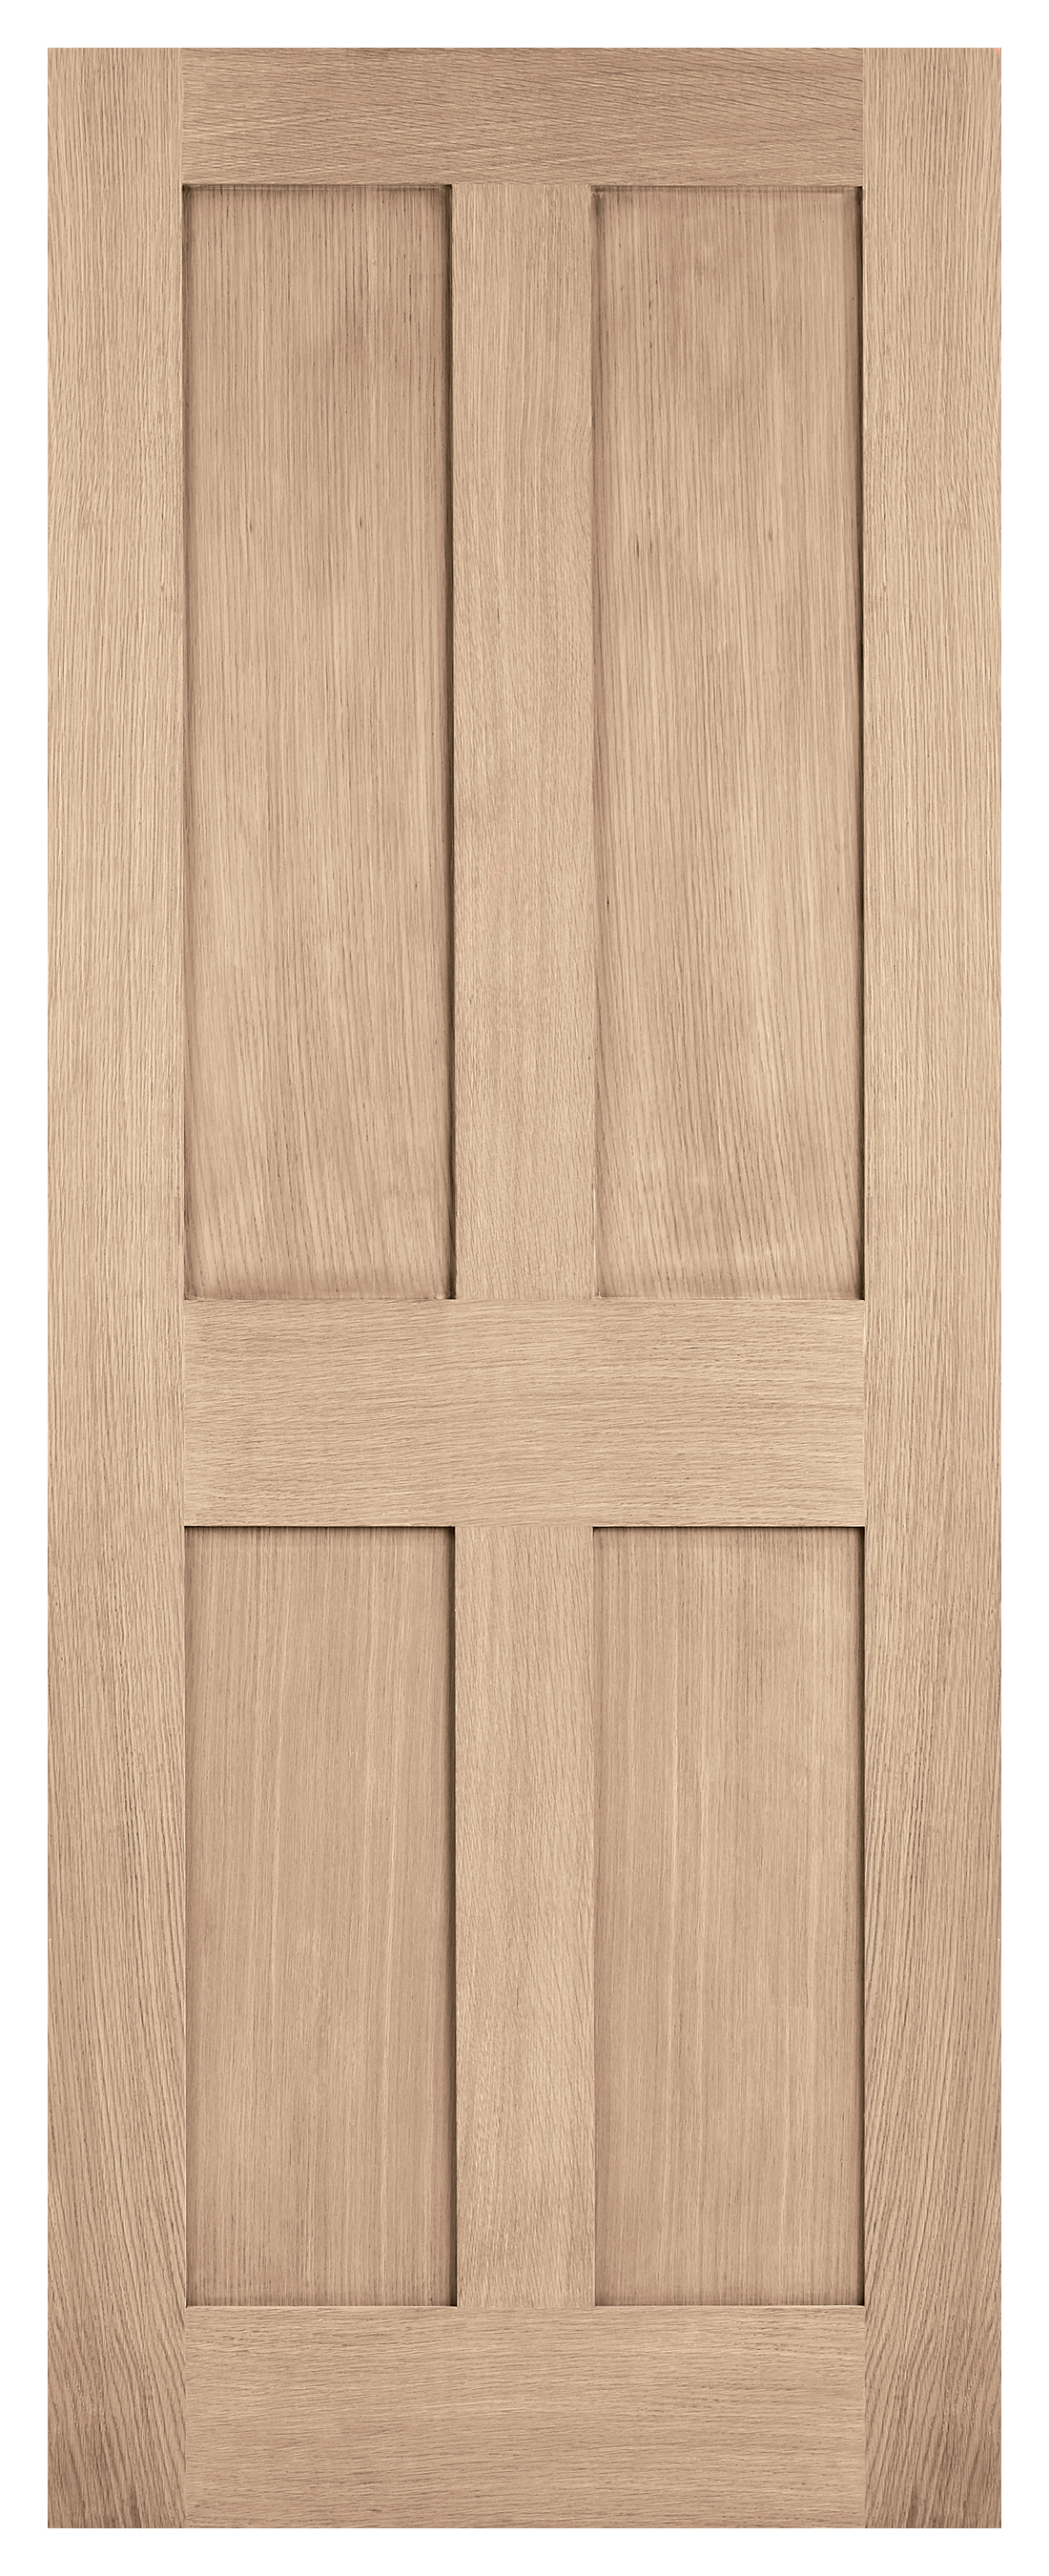 LPD Internal London 4 Panel Pre-finished oak FD30 Fire Door - 1981 mm